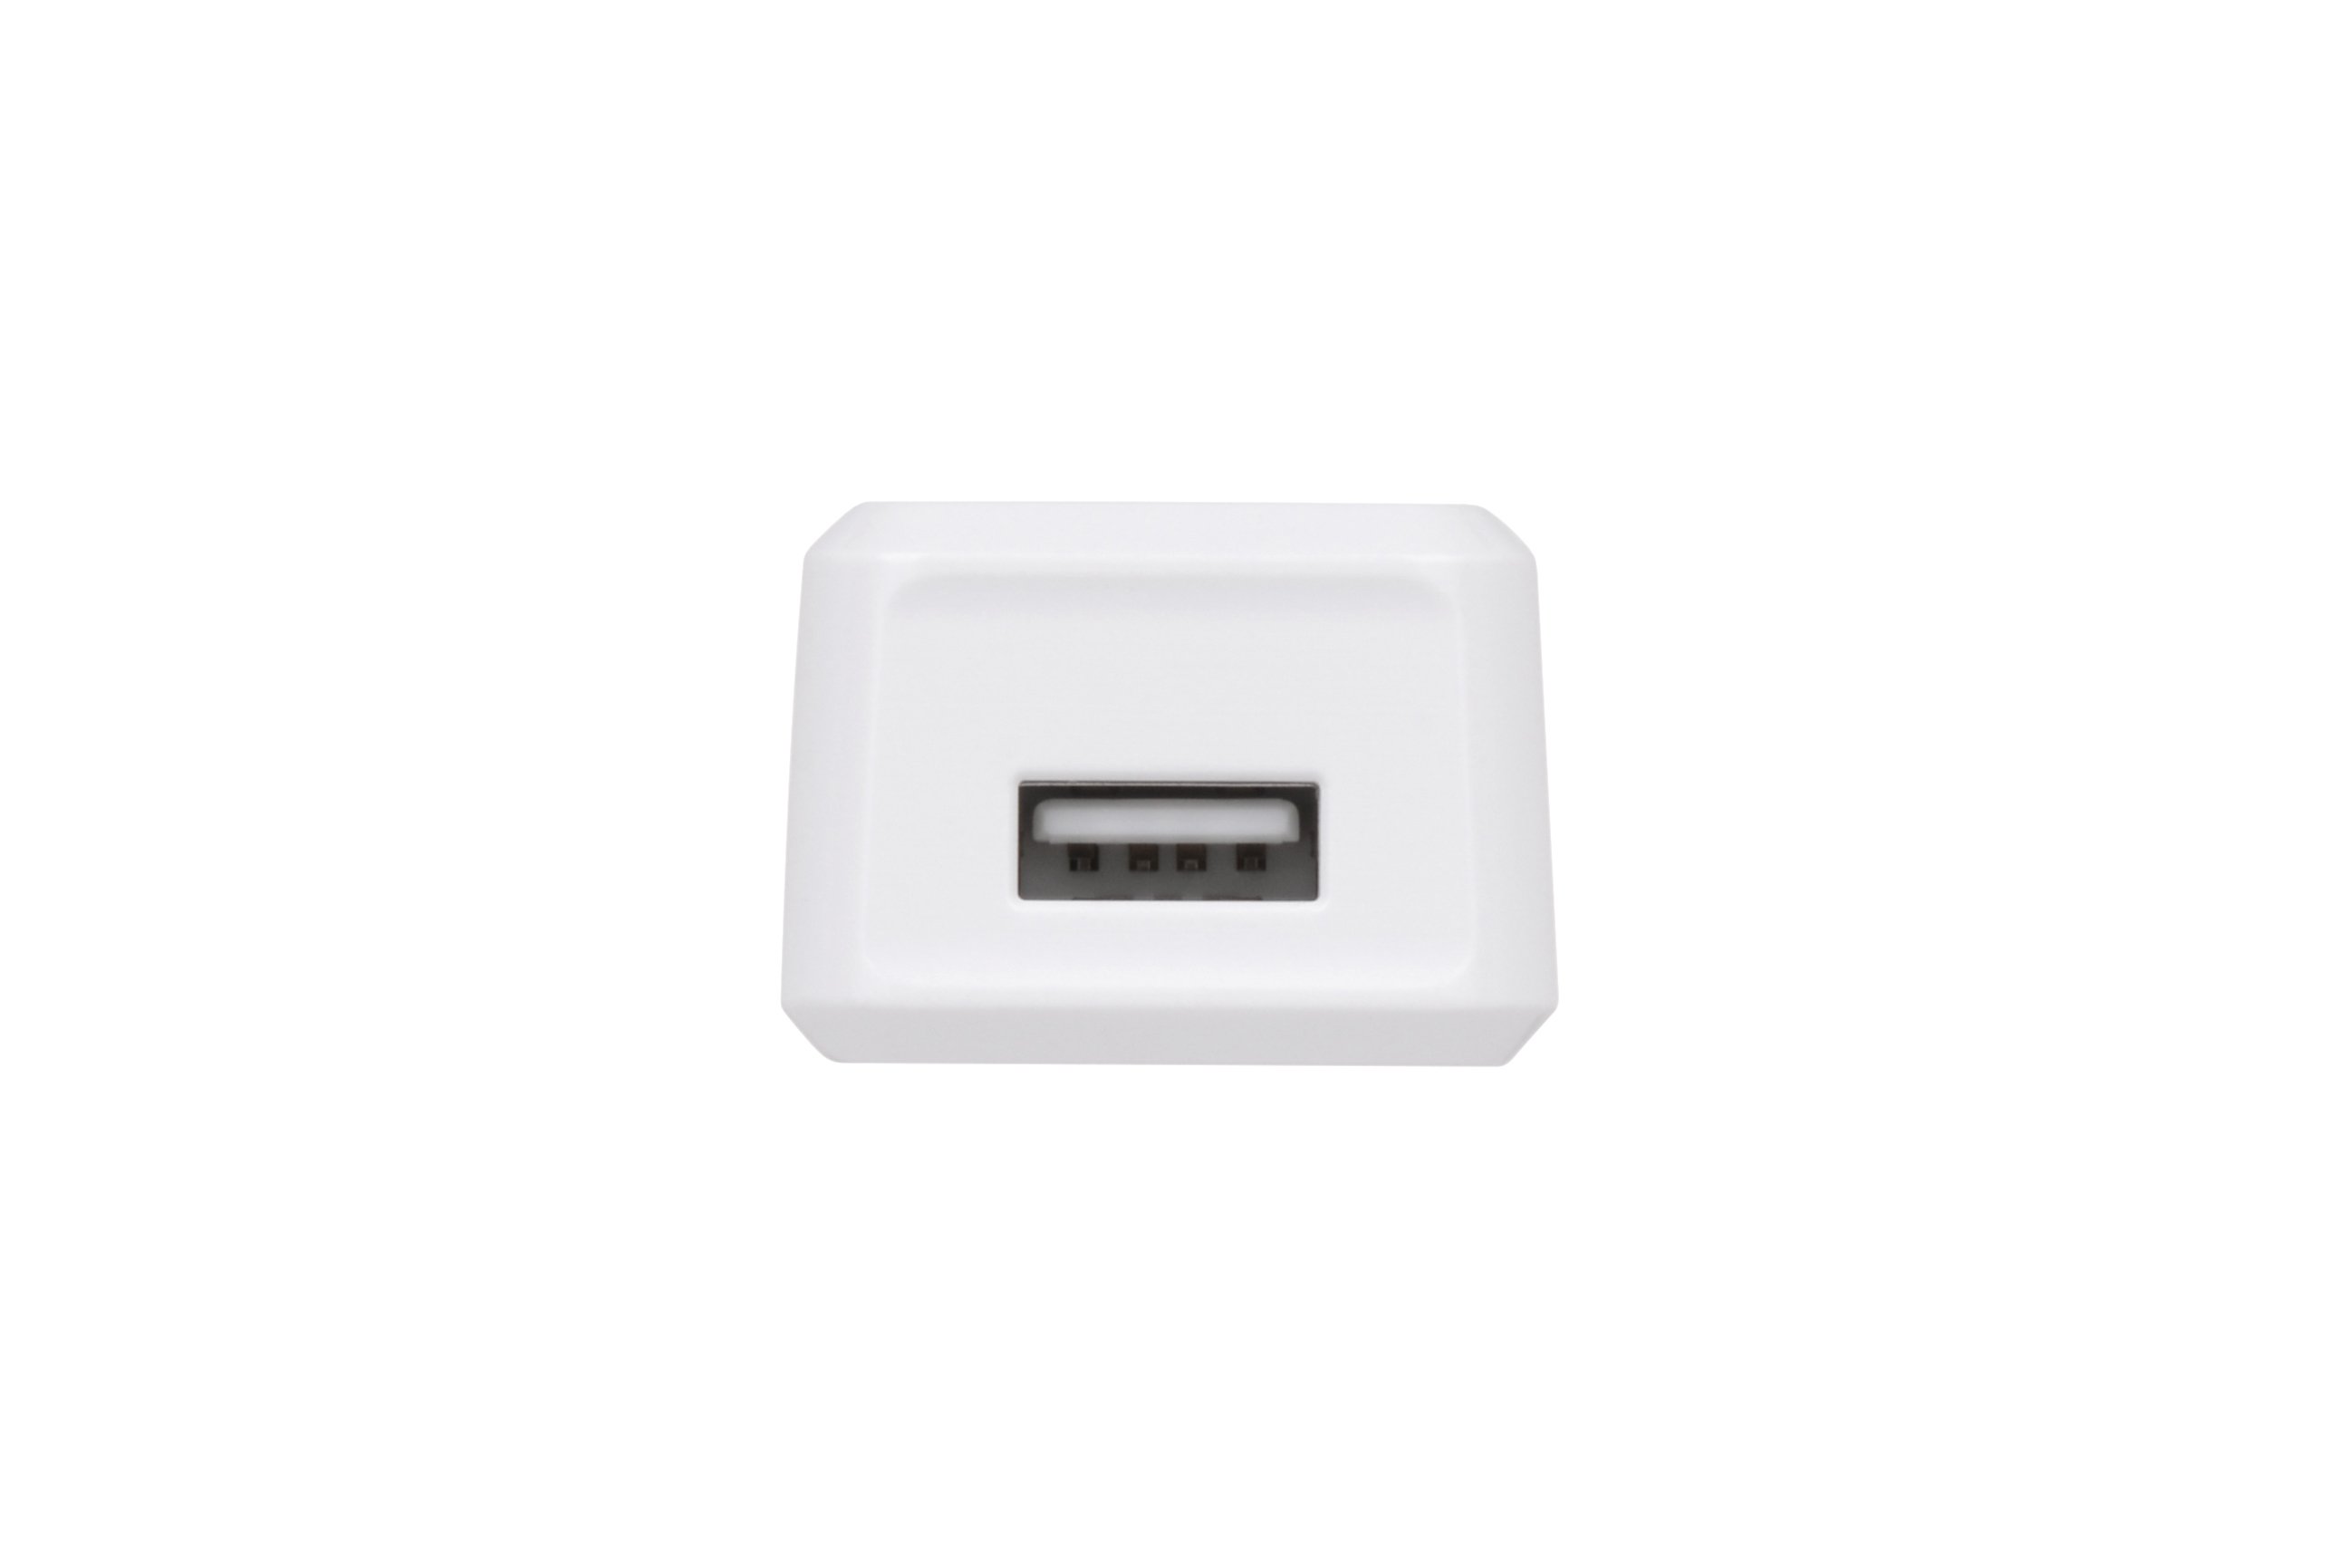 Сетевое ЗУ 2E USB Wall Charger 1A White (2E-WC1USB1A-W) фото 3